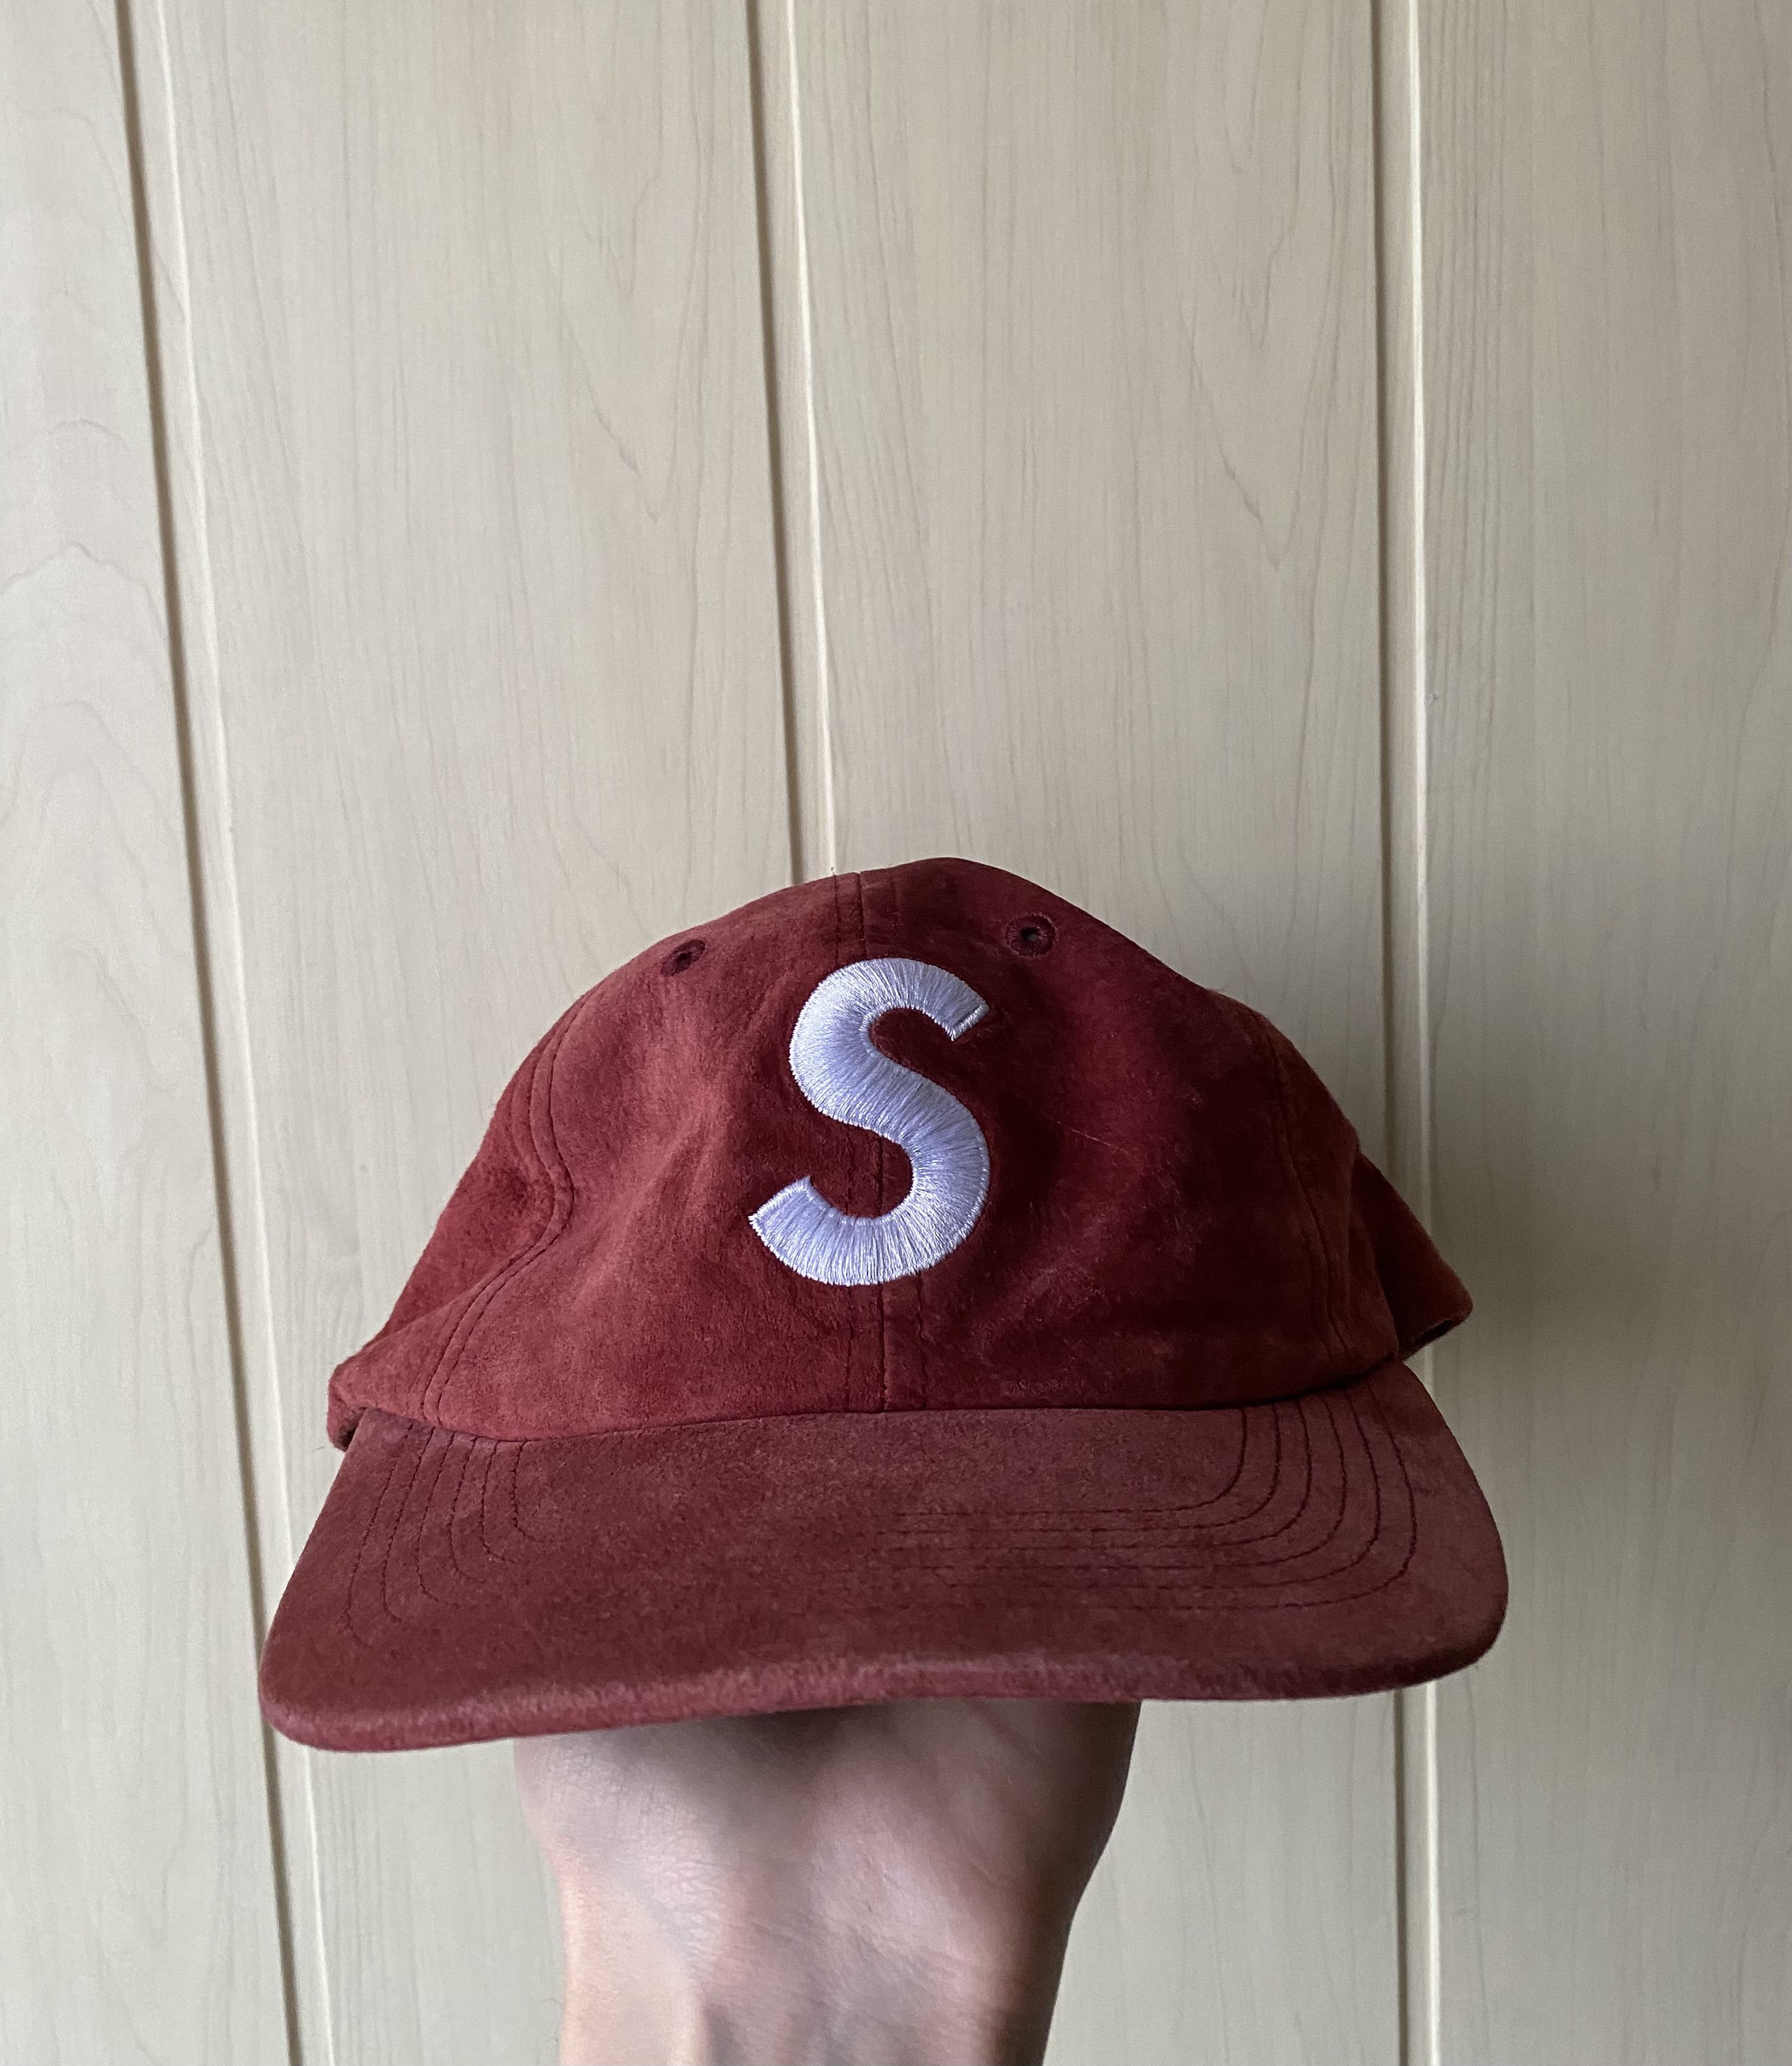 Supreme Supreme S Logo Suede leather cap | Grailed